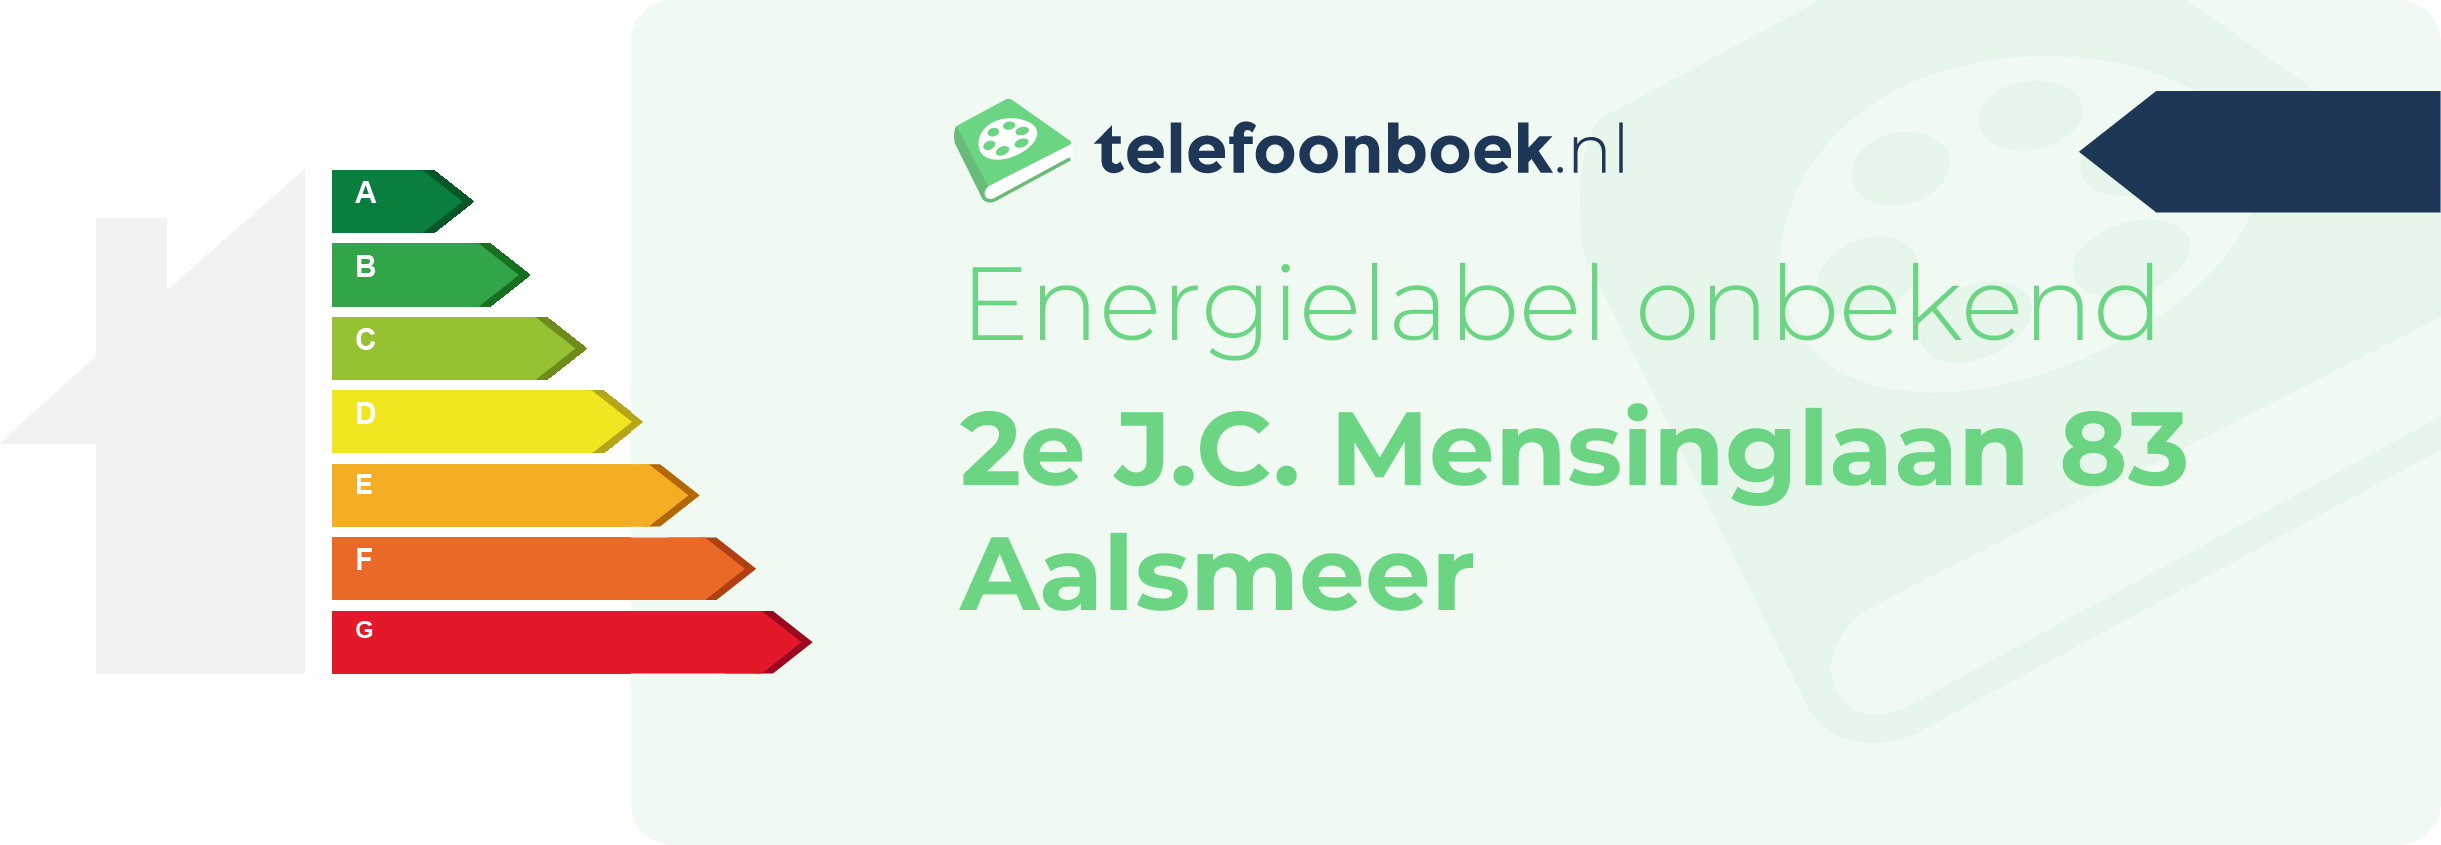 Energielabel 2e J.C. Mensinglaan 83 Aalsmeer